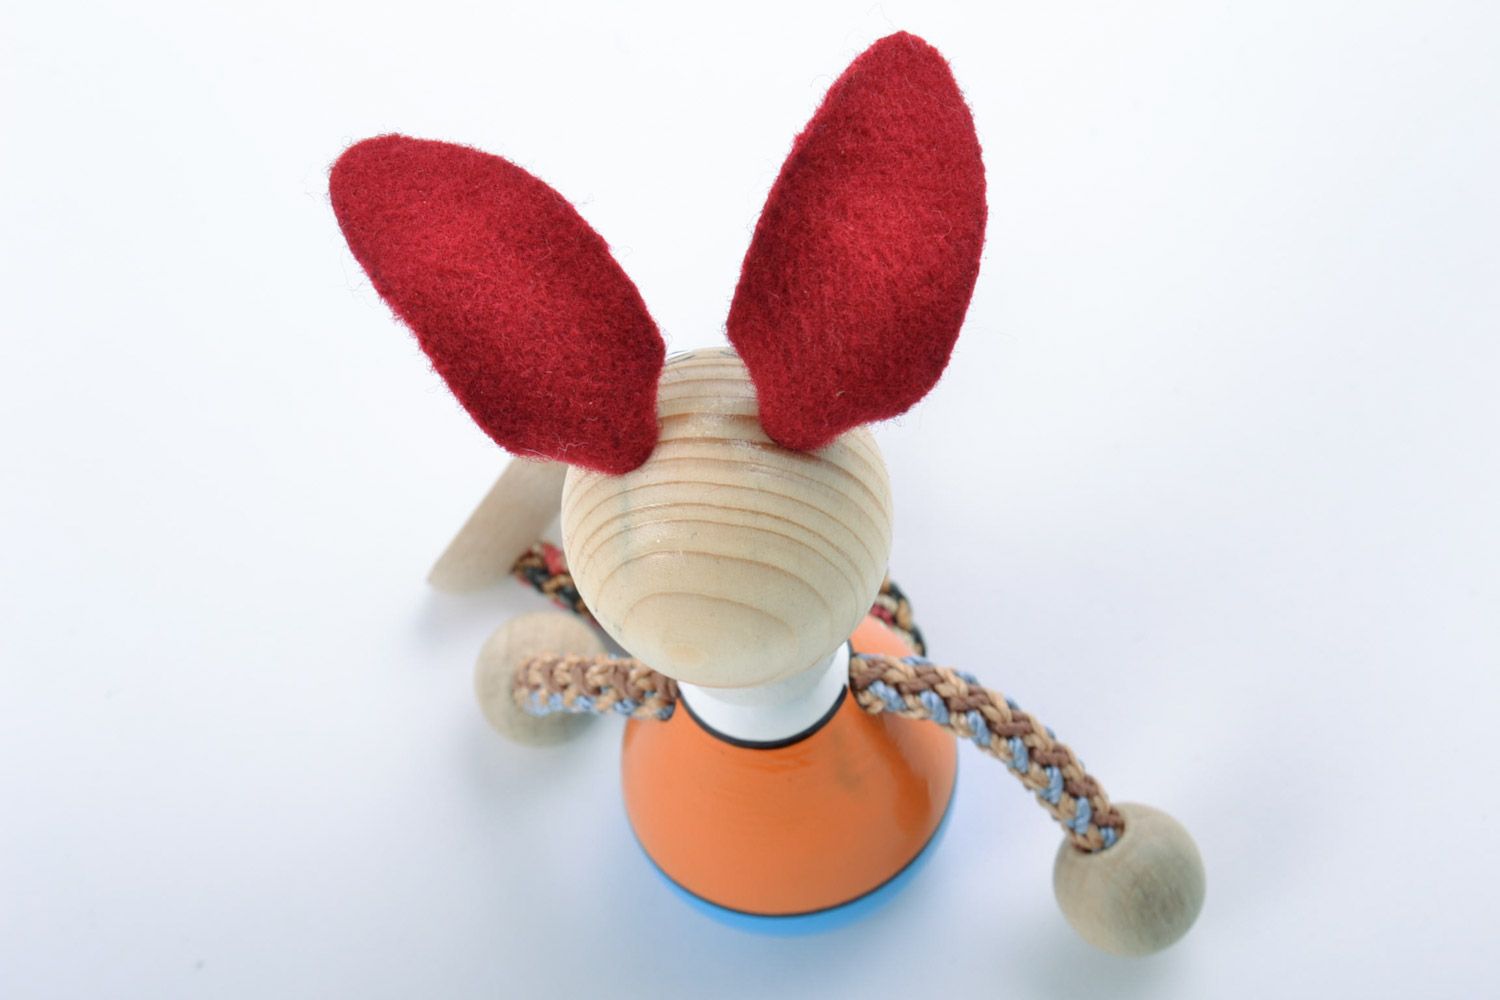 Деревянная игрушка в виде зайчика ручной работы расписанная эко красками фото 5